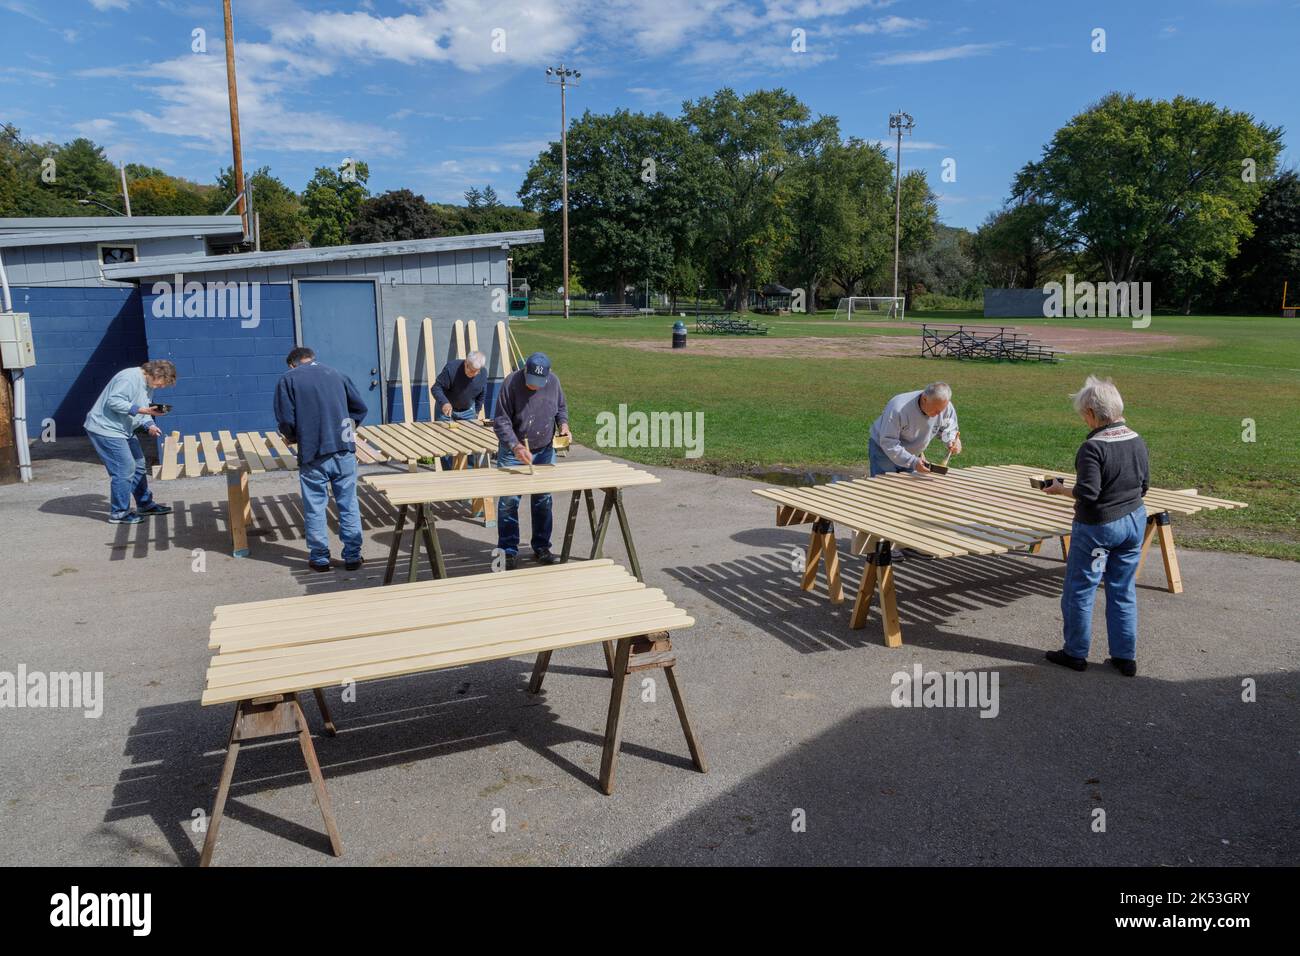 St. Johnsville, Montgomery County, Nueva York: Los voluntarios pintan tablillas de madera durante la reparación de la tribuna en el campo de pelota de la comunidad. Foto de stock